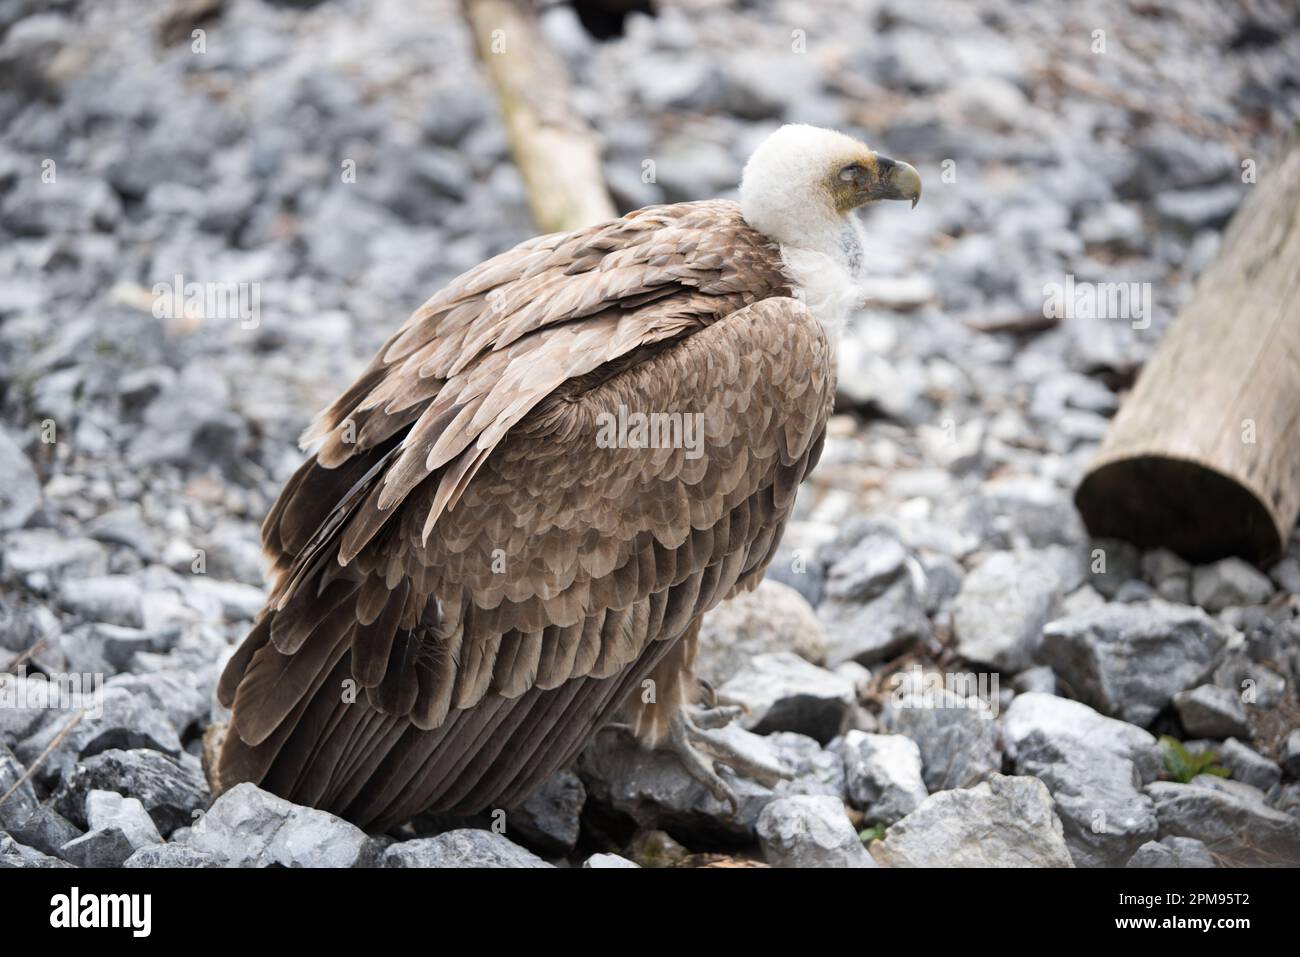 un bel esemplare di avvoltoio con il suo piumaggio marrone e bianco Stockfoto